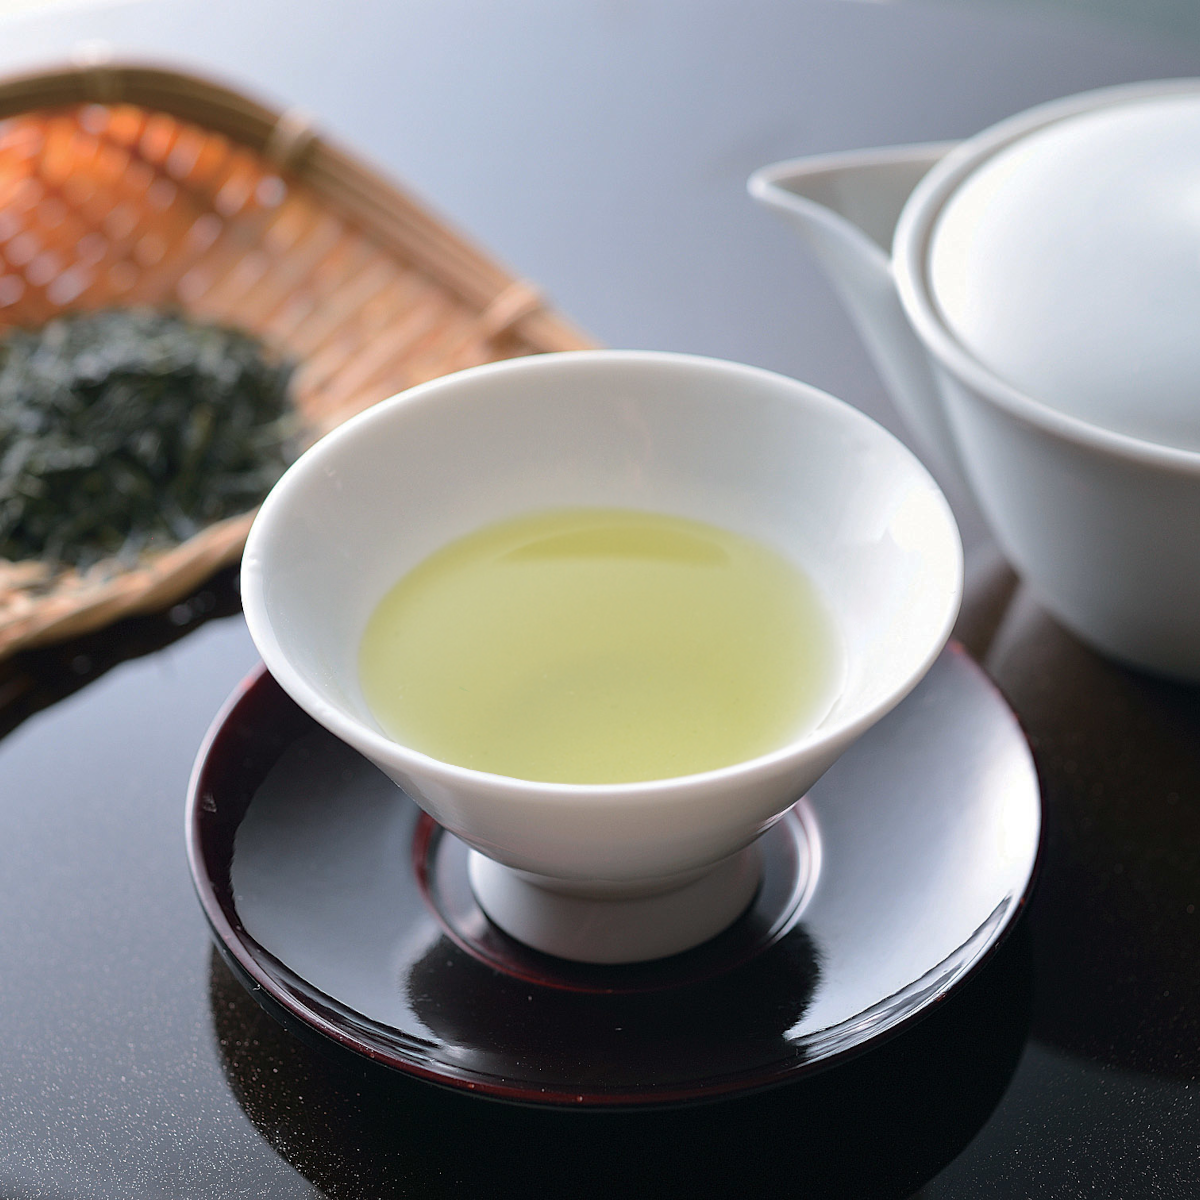 Sencha de Uji « Shinsen » (thé vert japonais) - 100g - feuilles de thé en vrac